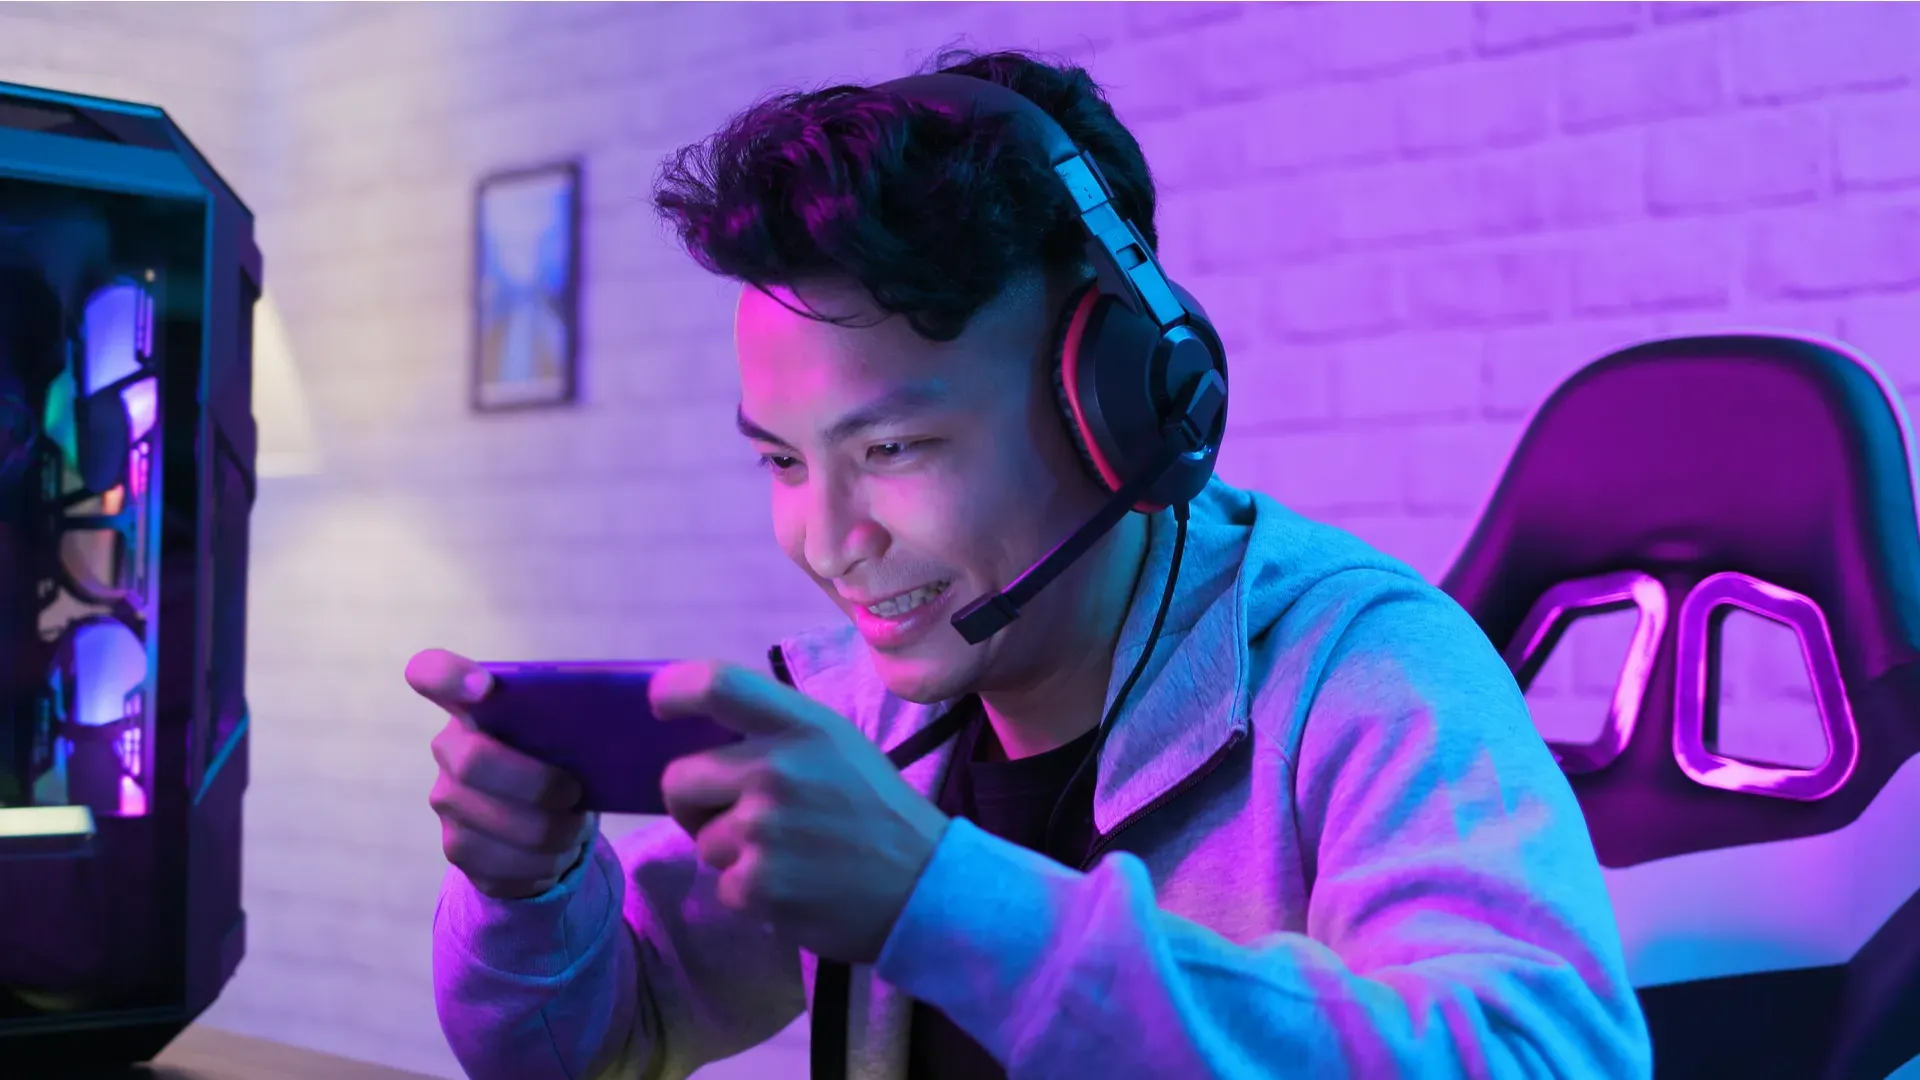 Homem asiático sentado em uma cadeira gamer joga no celular enquanto utiliza um headset, também gamer.